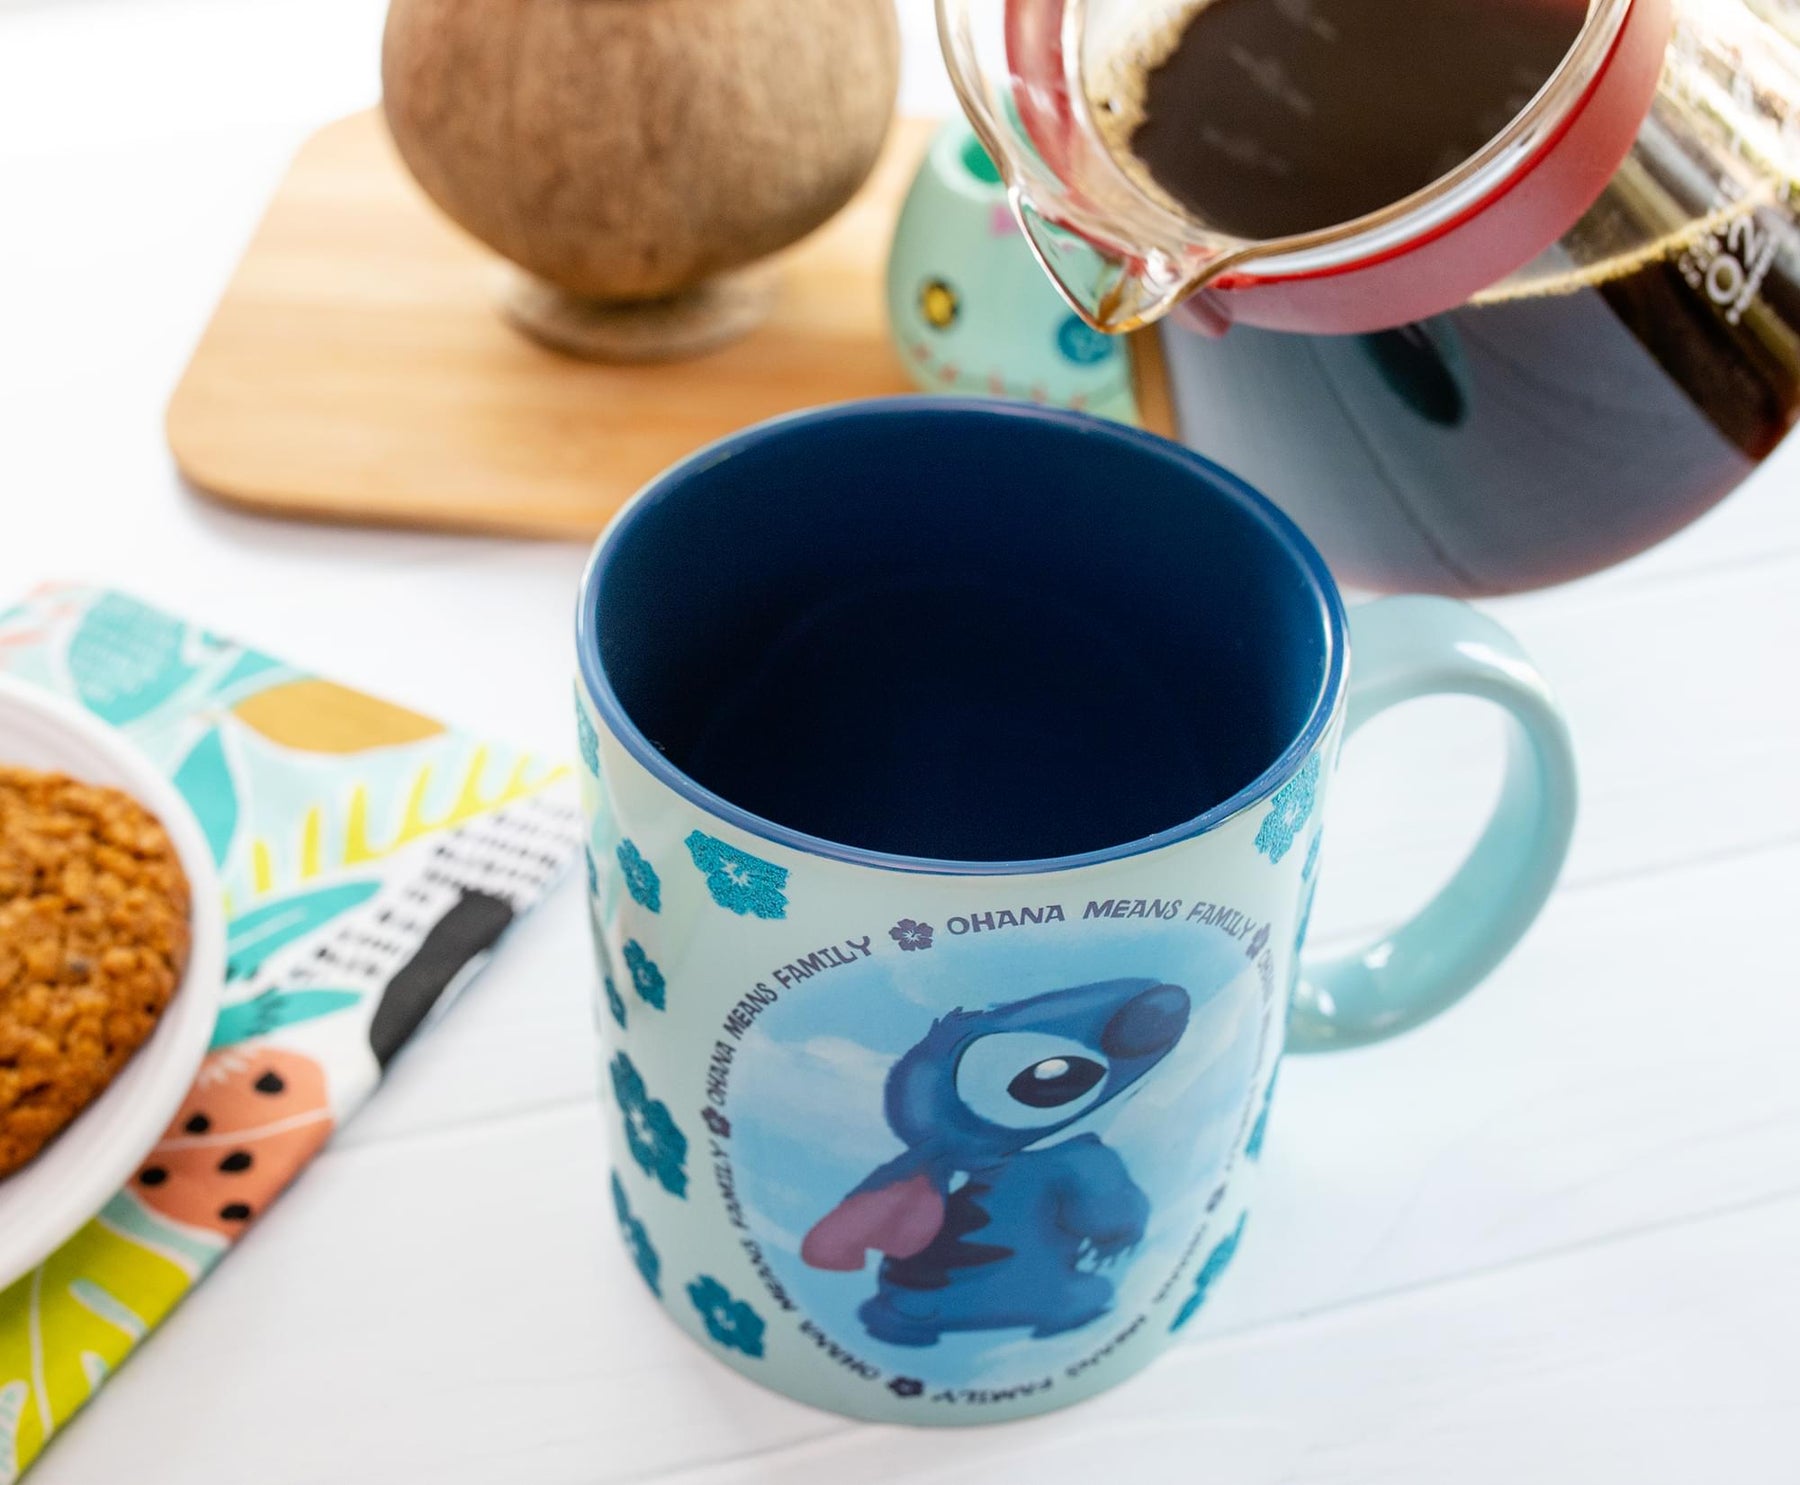 Stitch Ohana – Coffee Mug - PureArtz